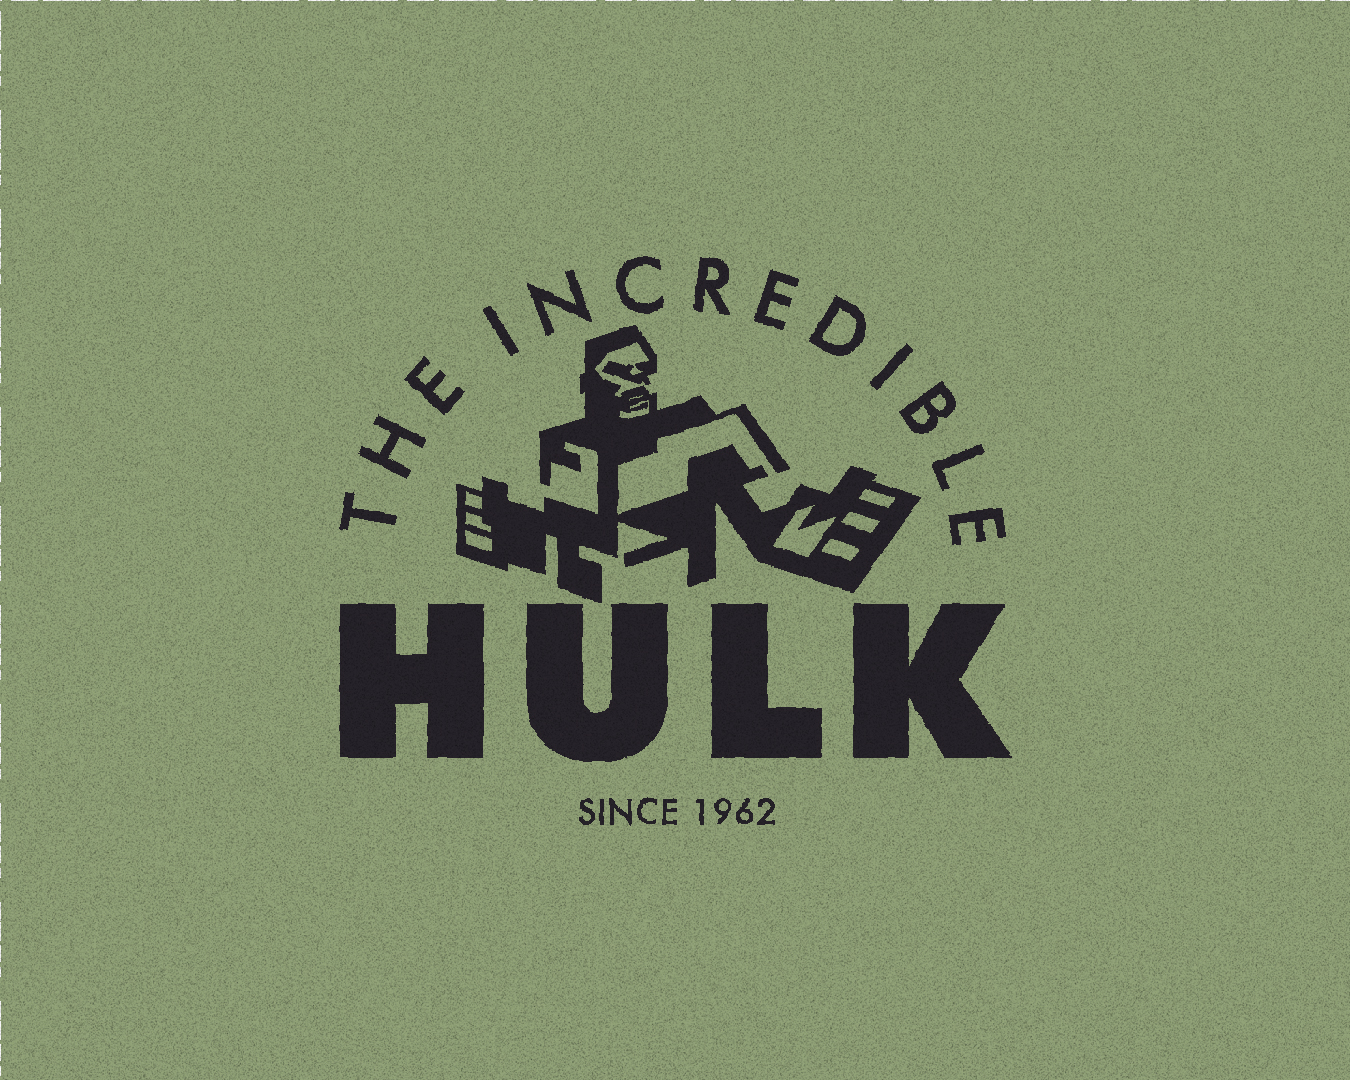 World War Hulk Logo PNG by xXMCUFan2020Xx on DeviantArt